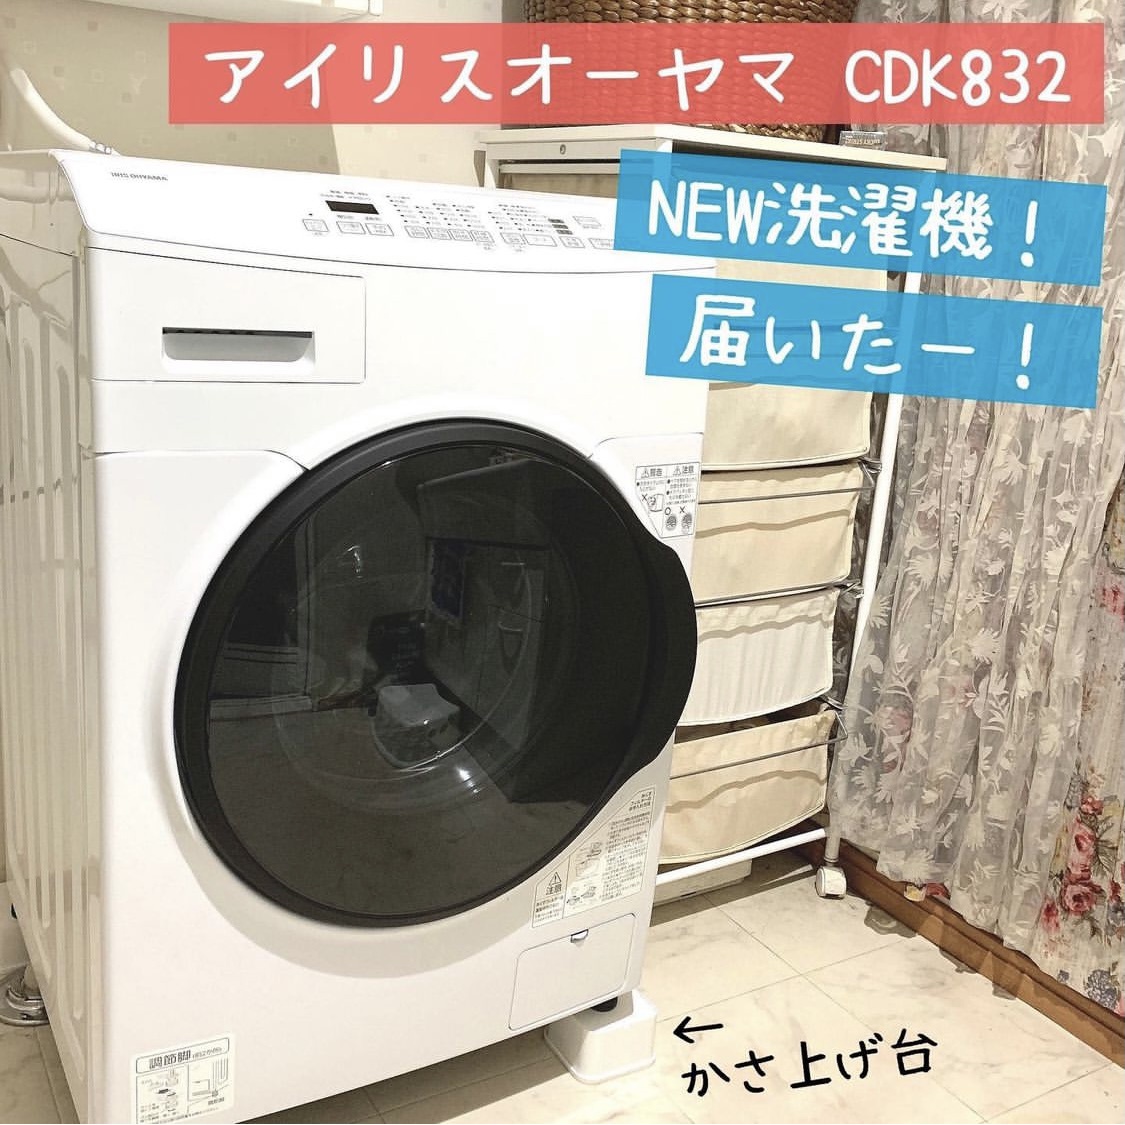 IRIS OHYAMA(アイリスオーヤマ) ドラム式洗濯機 CDK832を使ったチャイコさんのクチコミ画像1